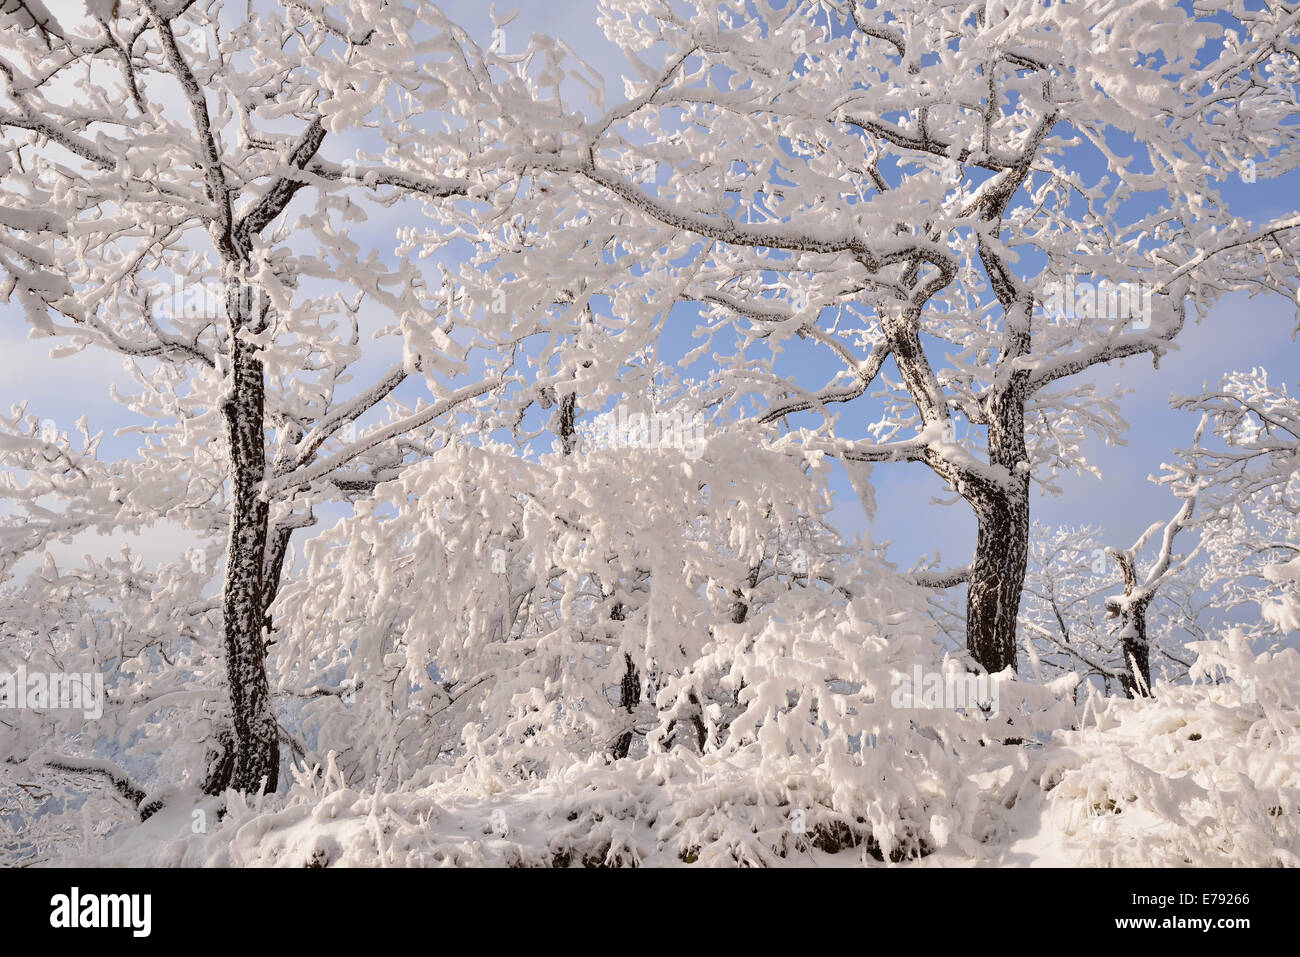 Una foresta in inverno, alberi coperti di neve e brina, Roßtrappe cliff, Thale, Sassonia-Anhalt, Germania Foto Stock